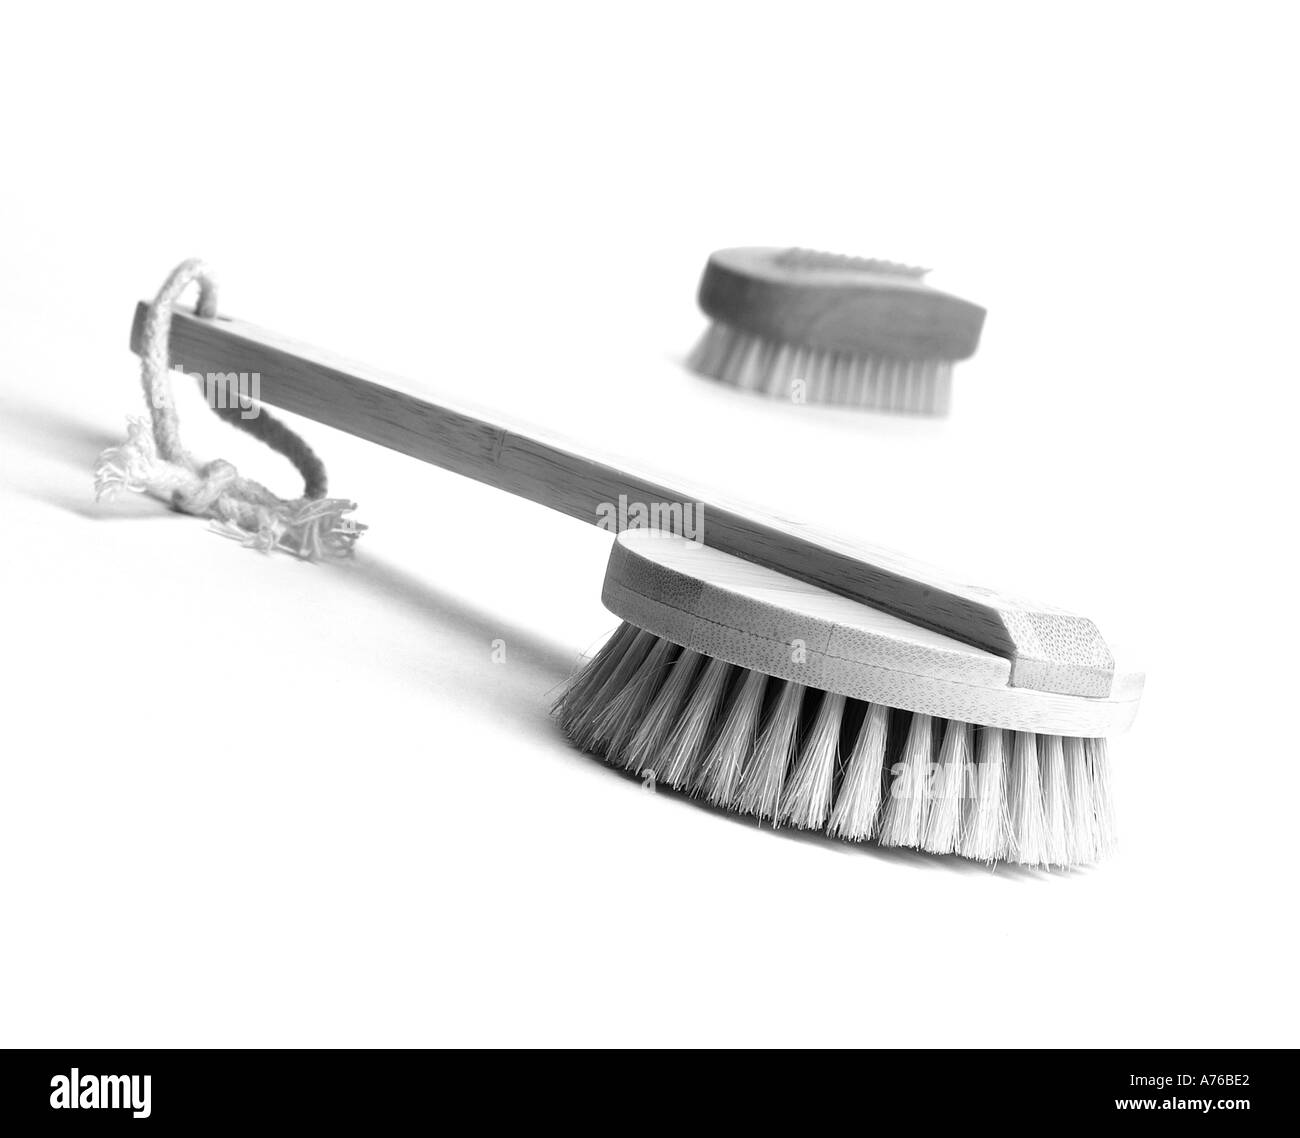 Immagine di panorama di due spazzole utilizzate nei trattamenti di salute e bellezza Foto Stock